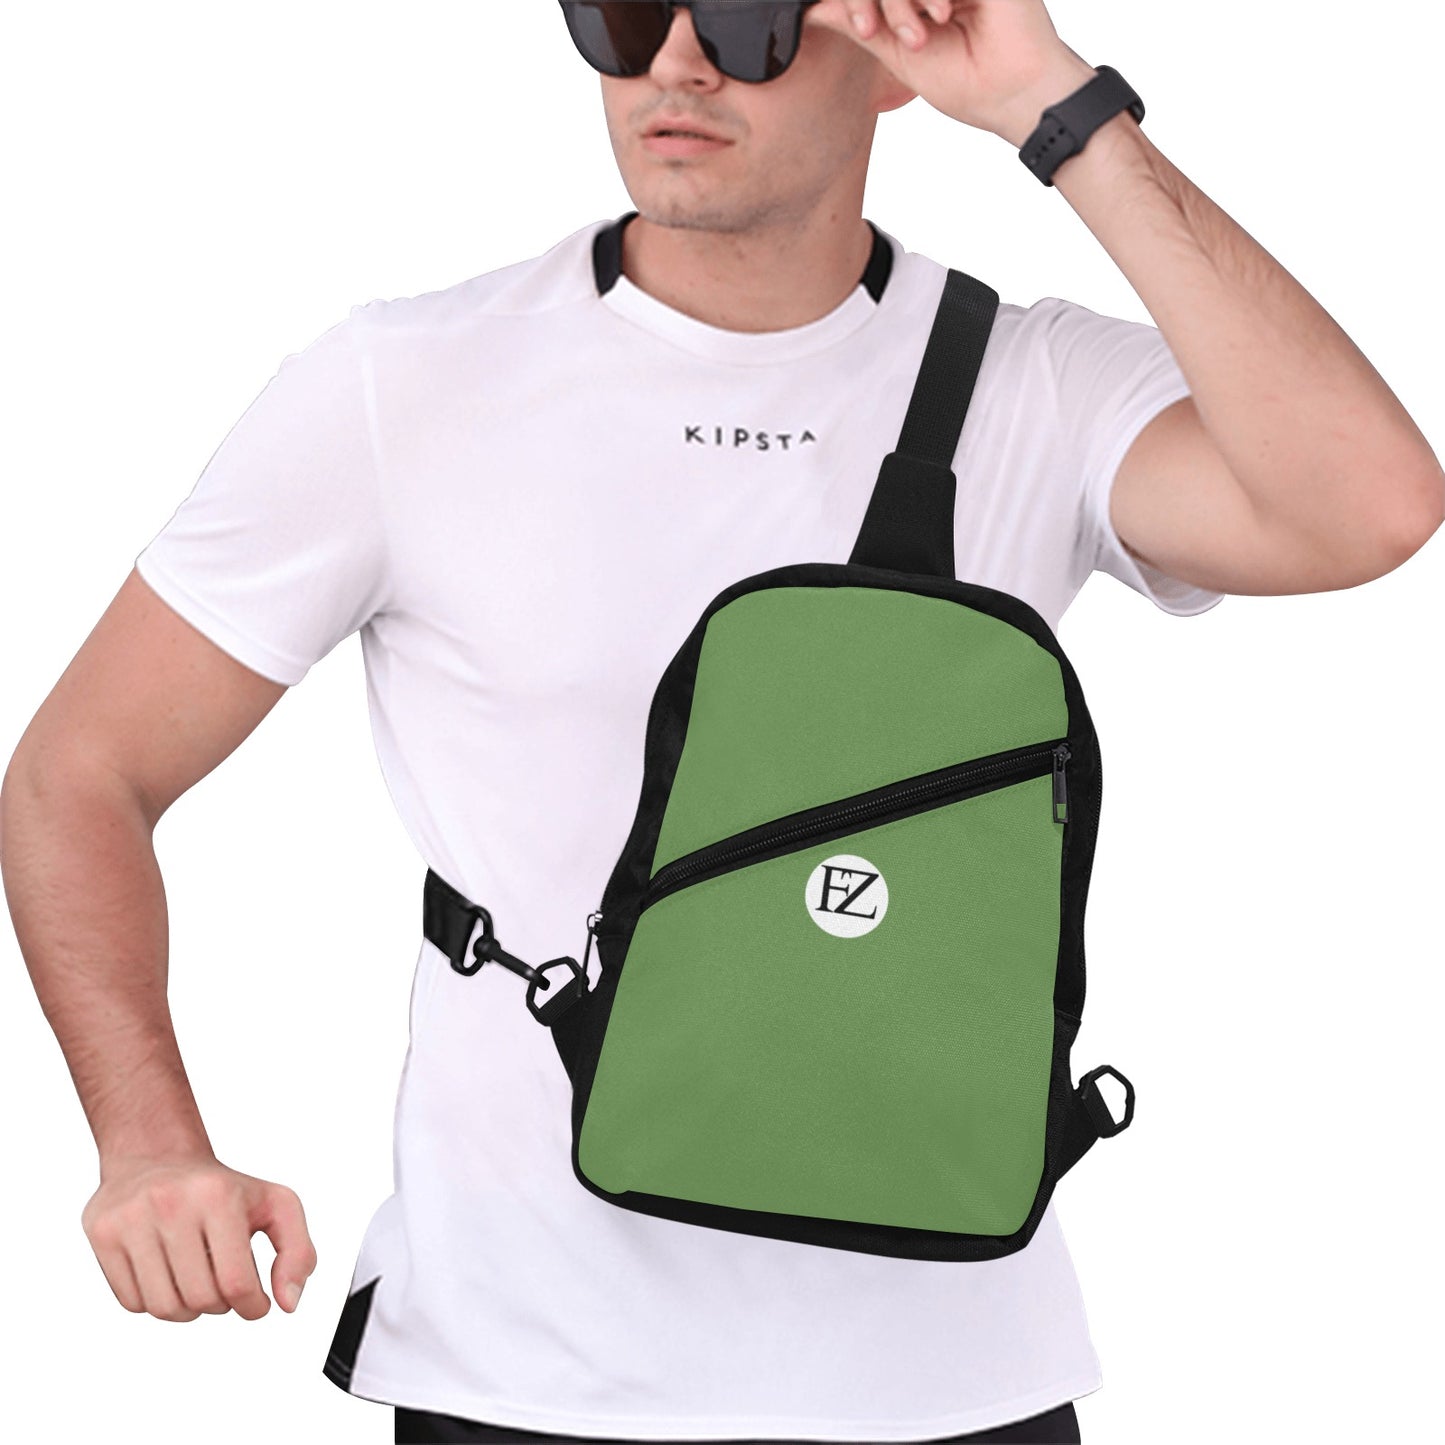 fz men's chest bag one size / fz chest bag-green men's chest bag (model1726)